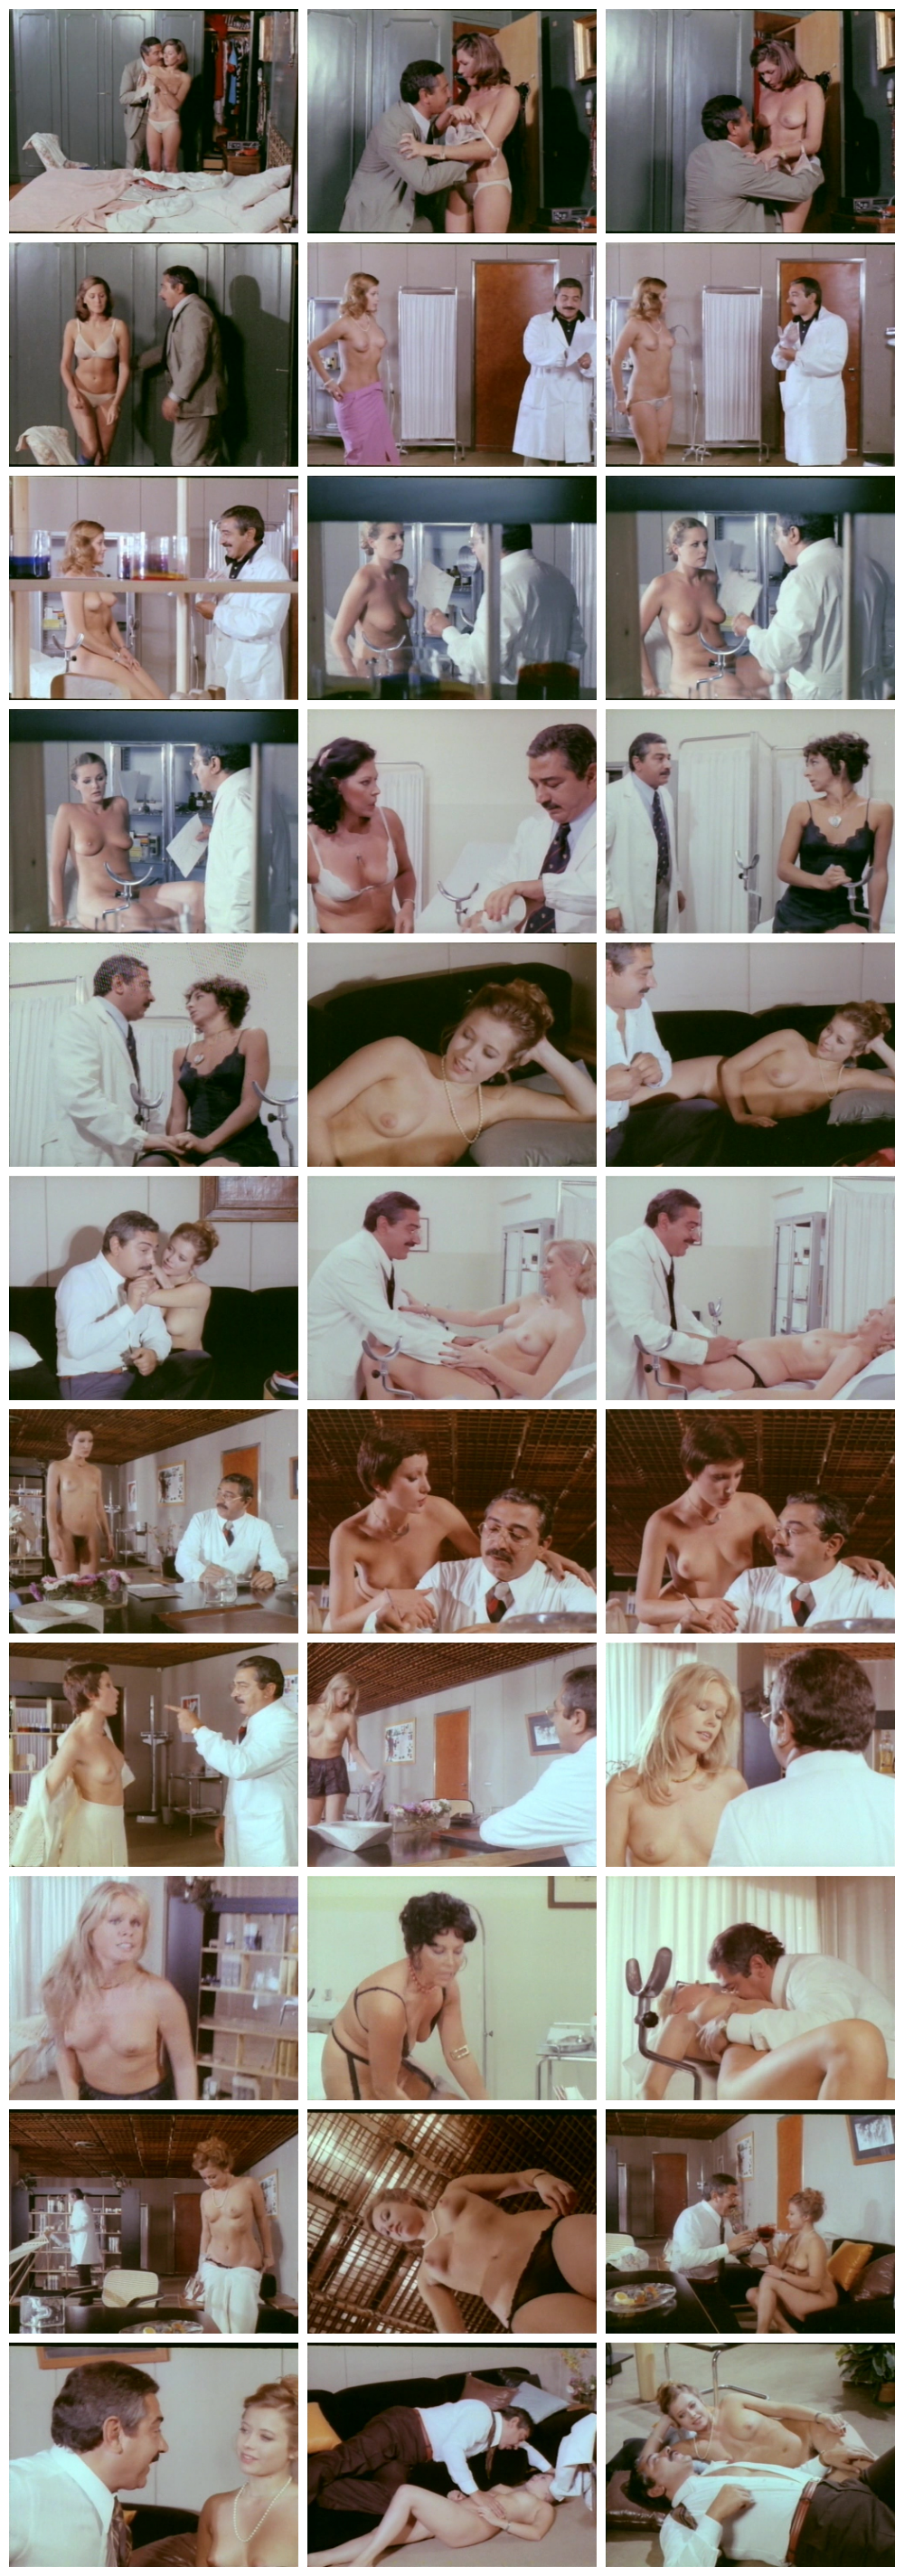 Il ginecologo della mutua (1977) EroGarga Watch Free Vintage Porn Movies, Retro Sex Videos, Mobile Porn picture picture